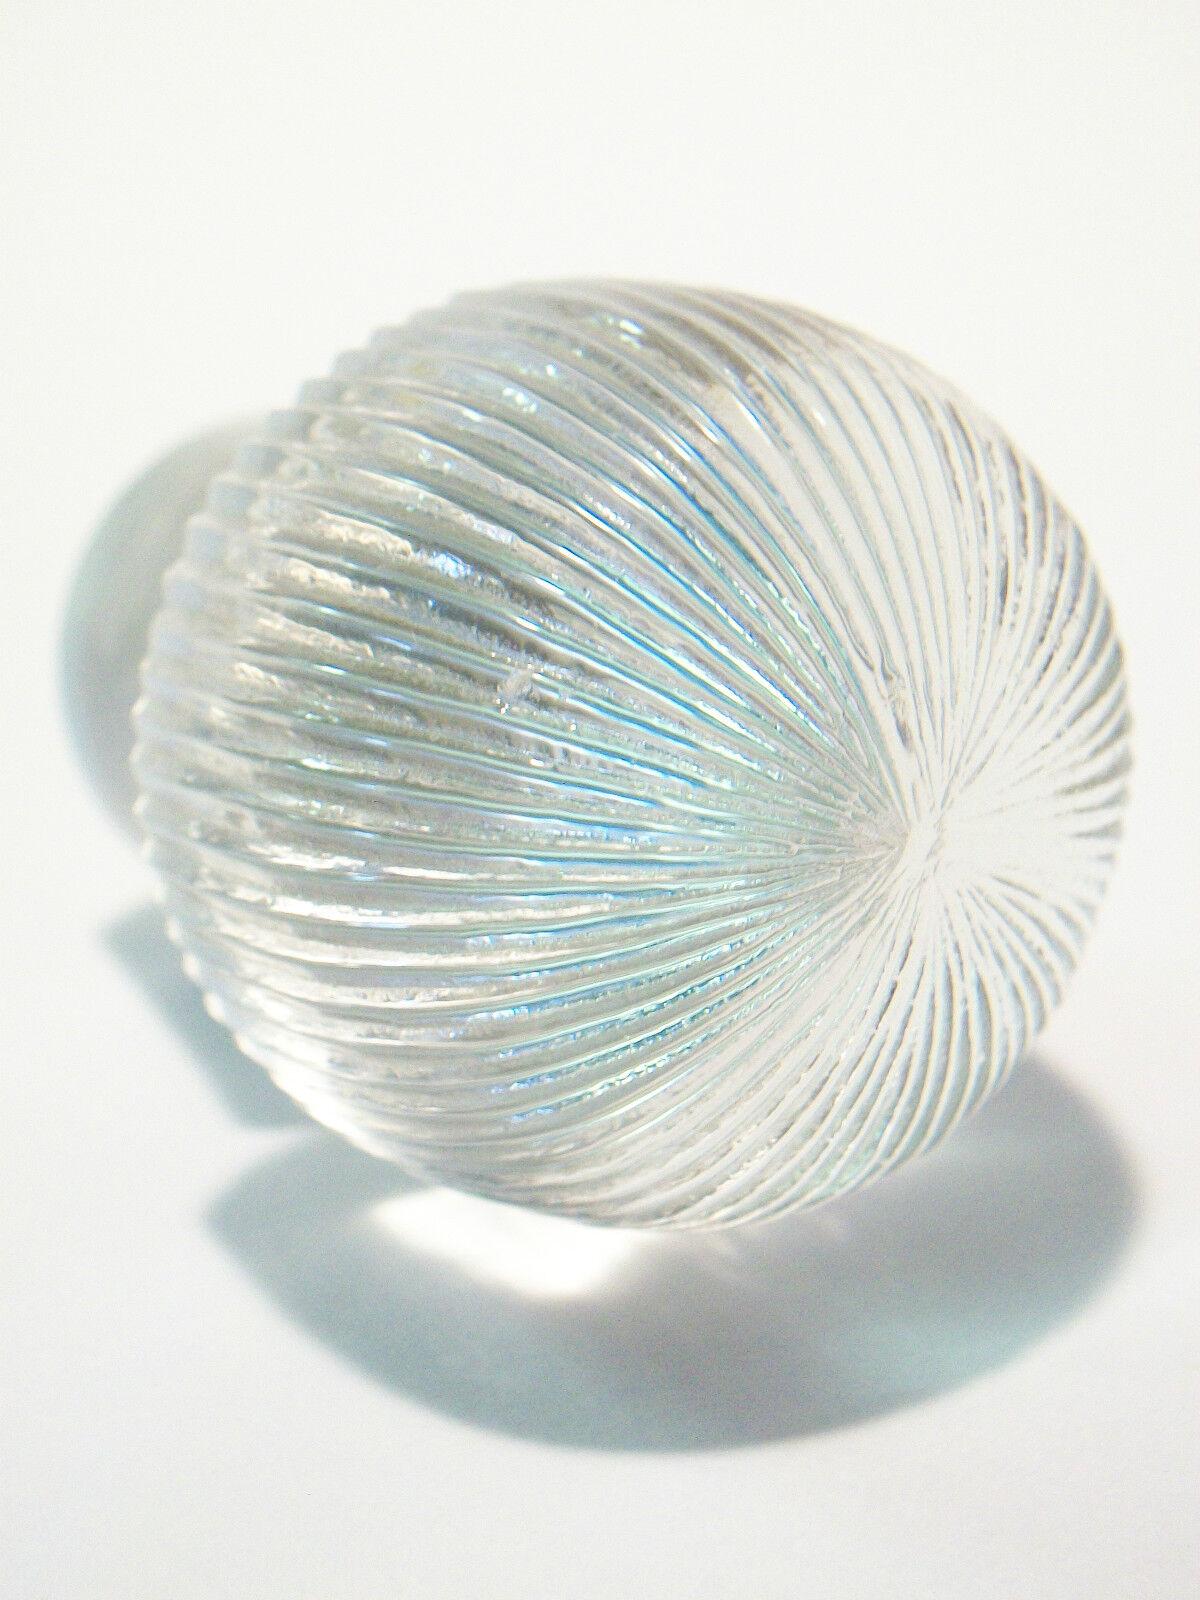 RENE LALIQUE - Bouchon ancien en verre transparent en forme de champignon pour une carafe ou un flacon de parfum - numéro '98' sur la base - France - début du 20ème siècle.  Il s'agit d'un bouchon original de R. Lalique - et non d'une reproduction